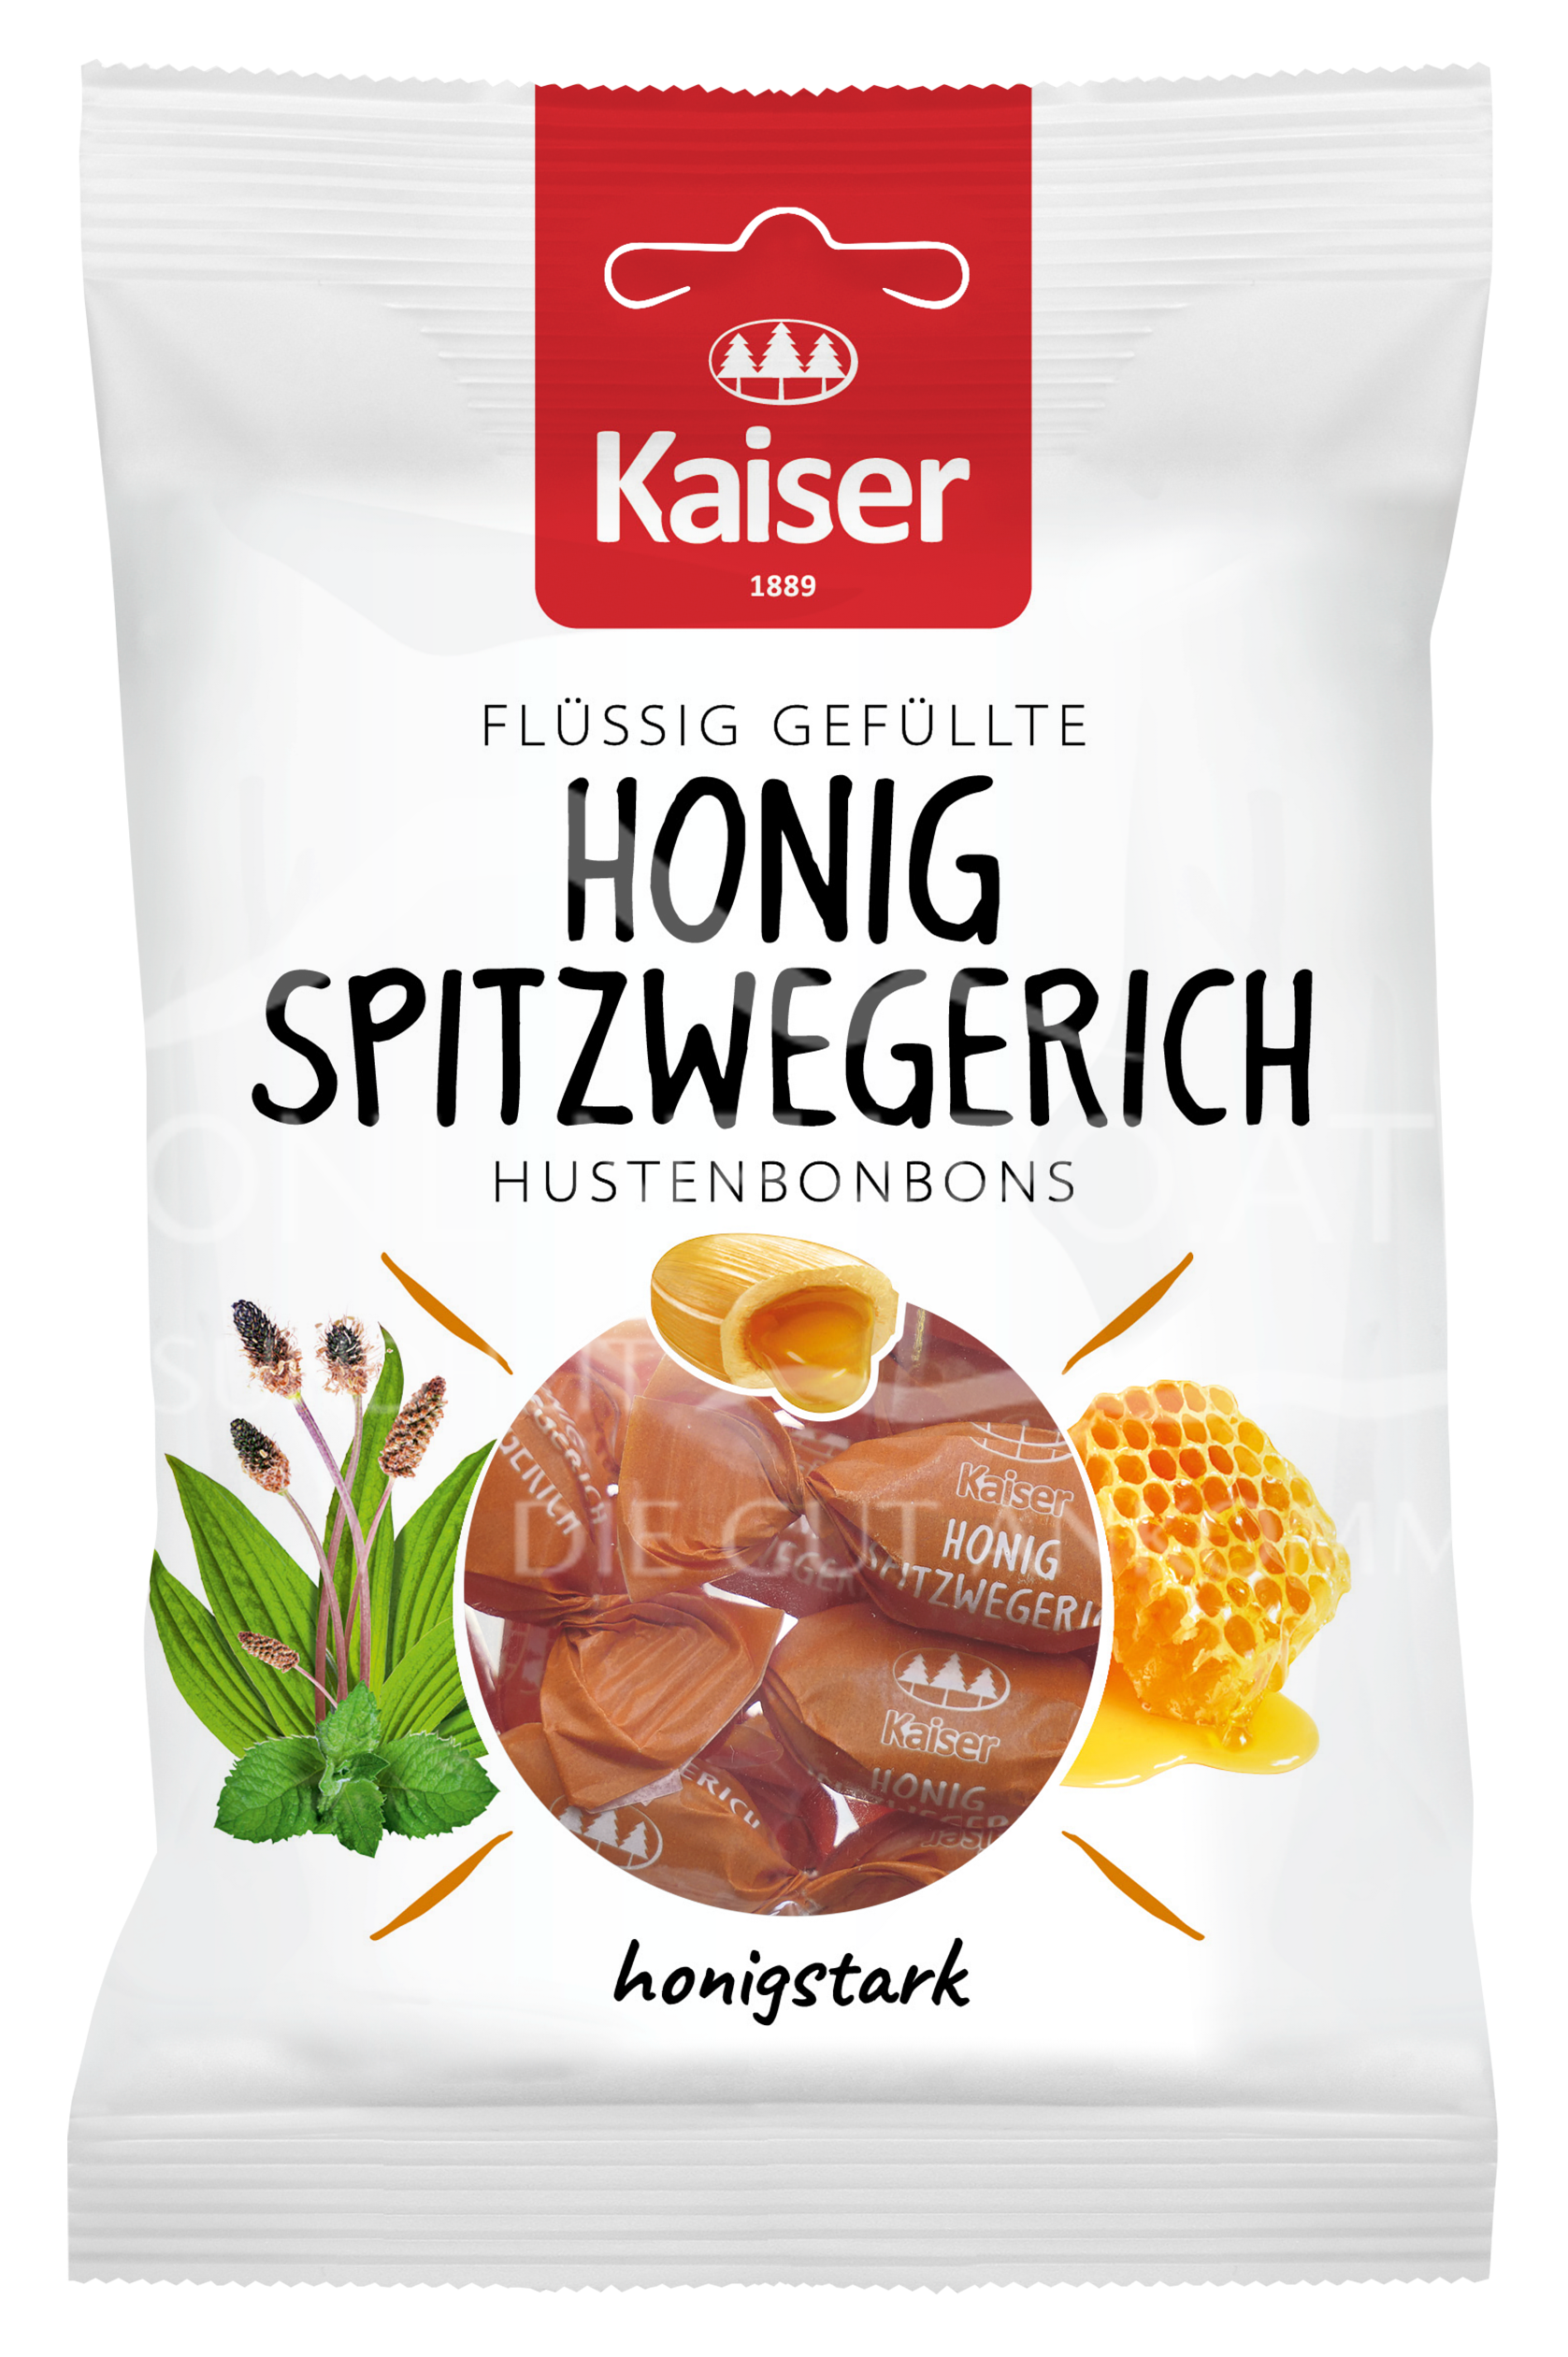 Kaiser Honig Spitzwegerich Hustenbonbons flüssig gefüllt mit Honig